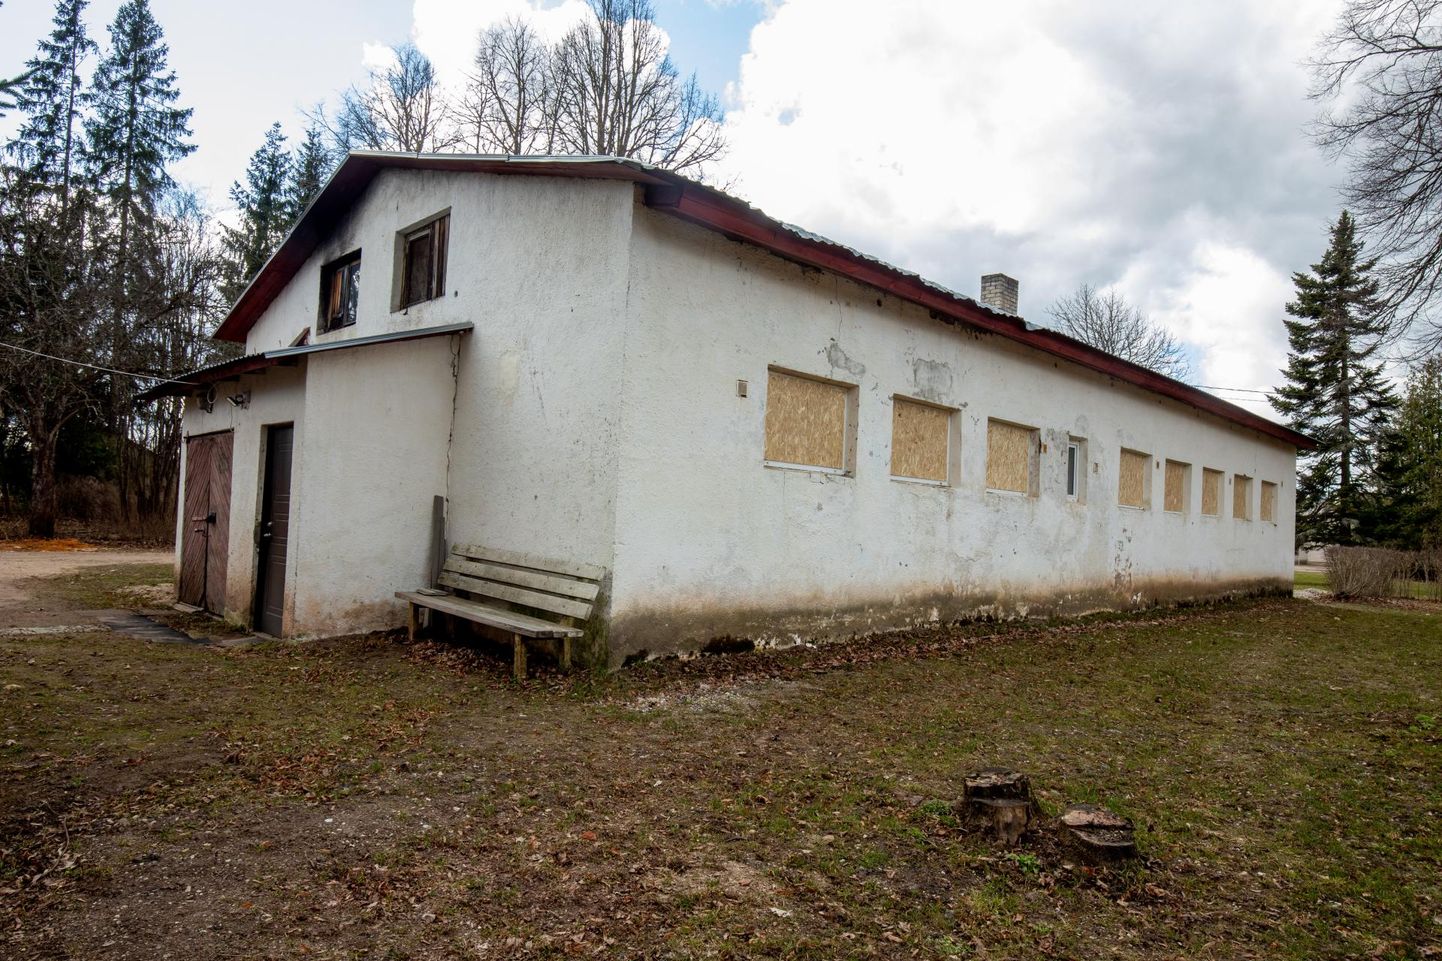 Tihemetsa aleviku sauna kurikaelte purustatud 12 akent katsid OÜ Saarde Kommunaali töömehed ajutiselt plaatidega, uute pakettklaaside paigaldamine maksab umbes 3000 eurot.